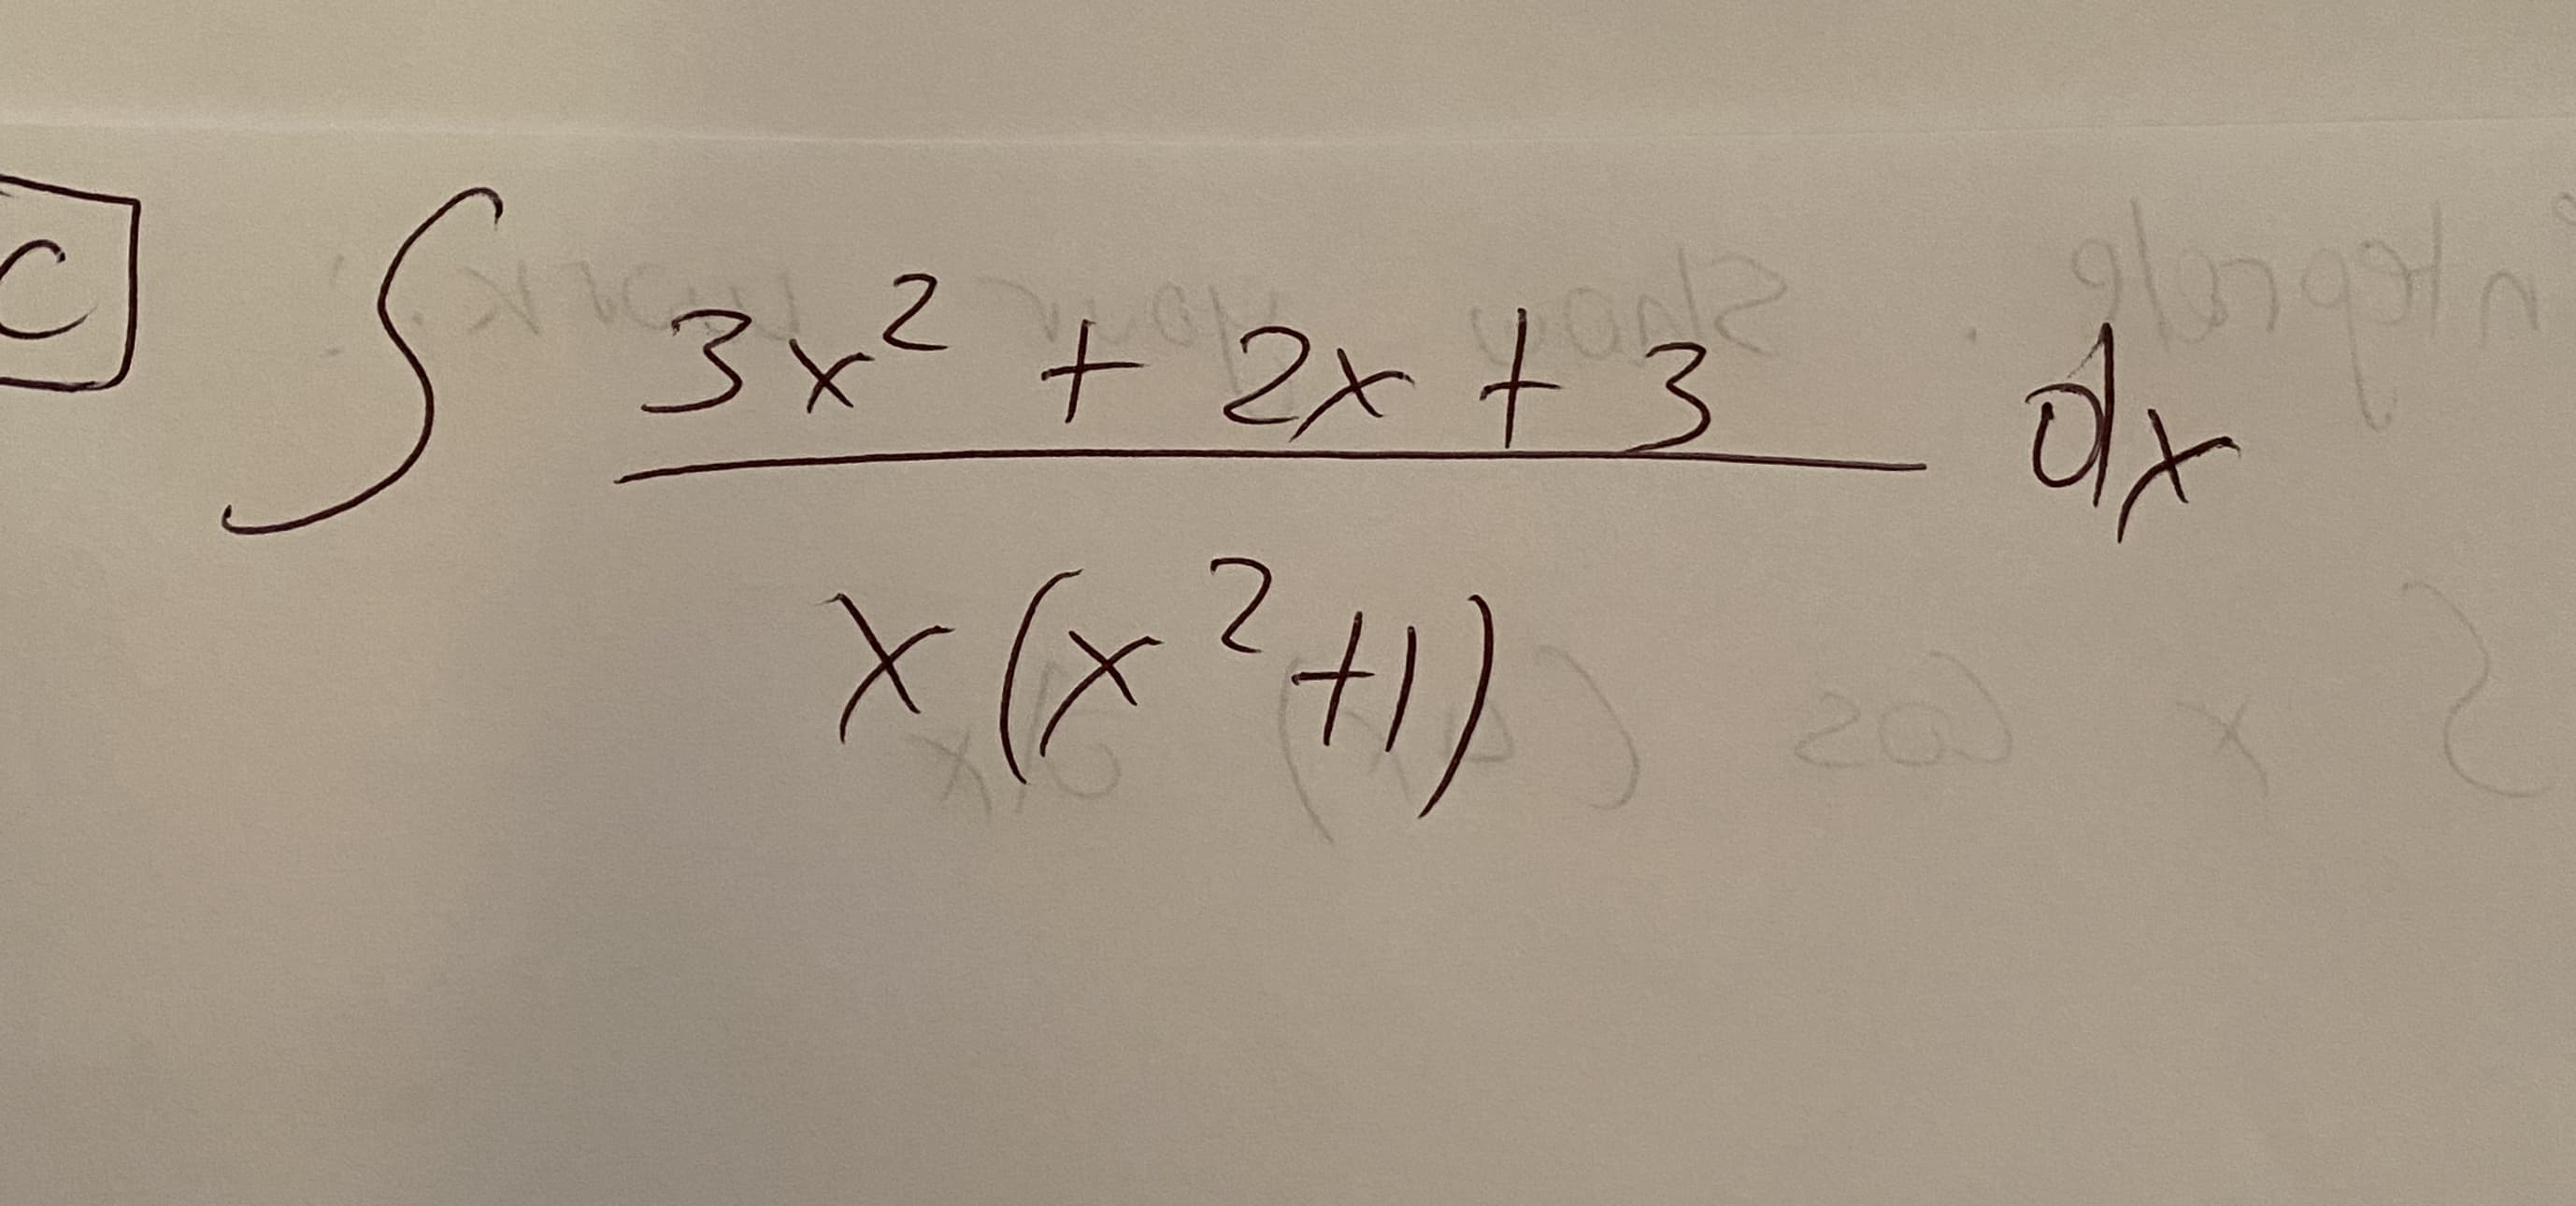 3x² + 2x t 3
dx
と
20
